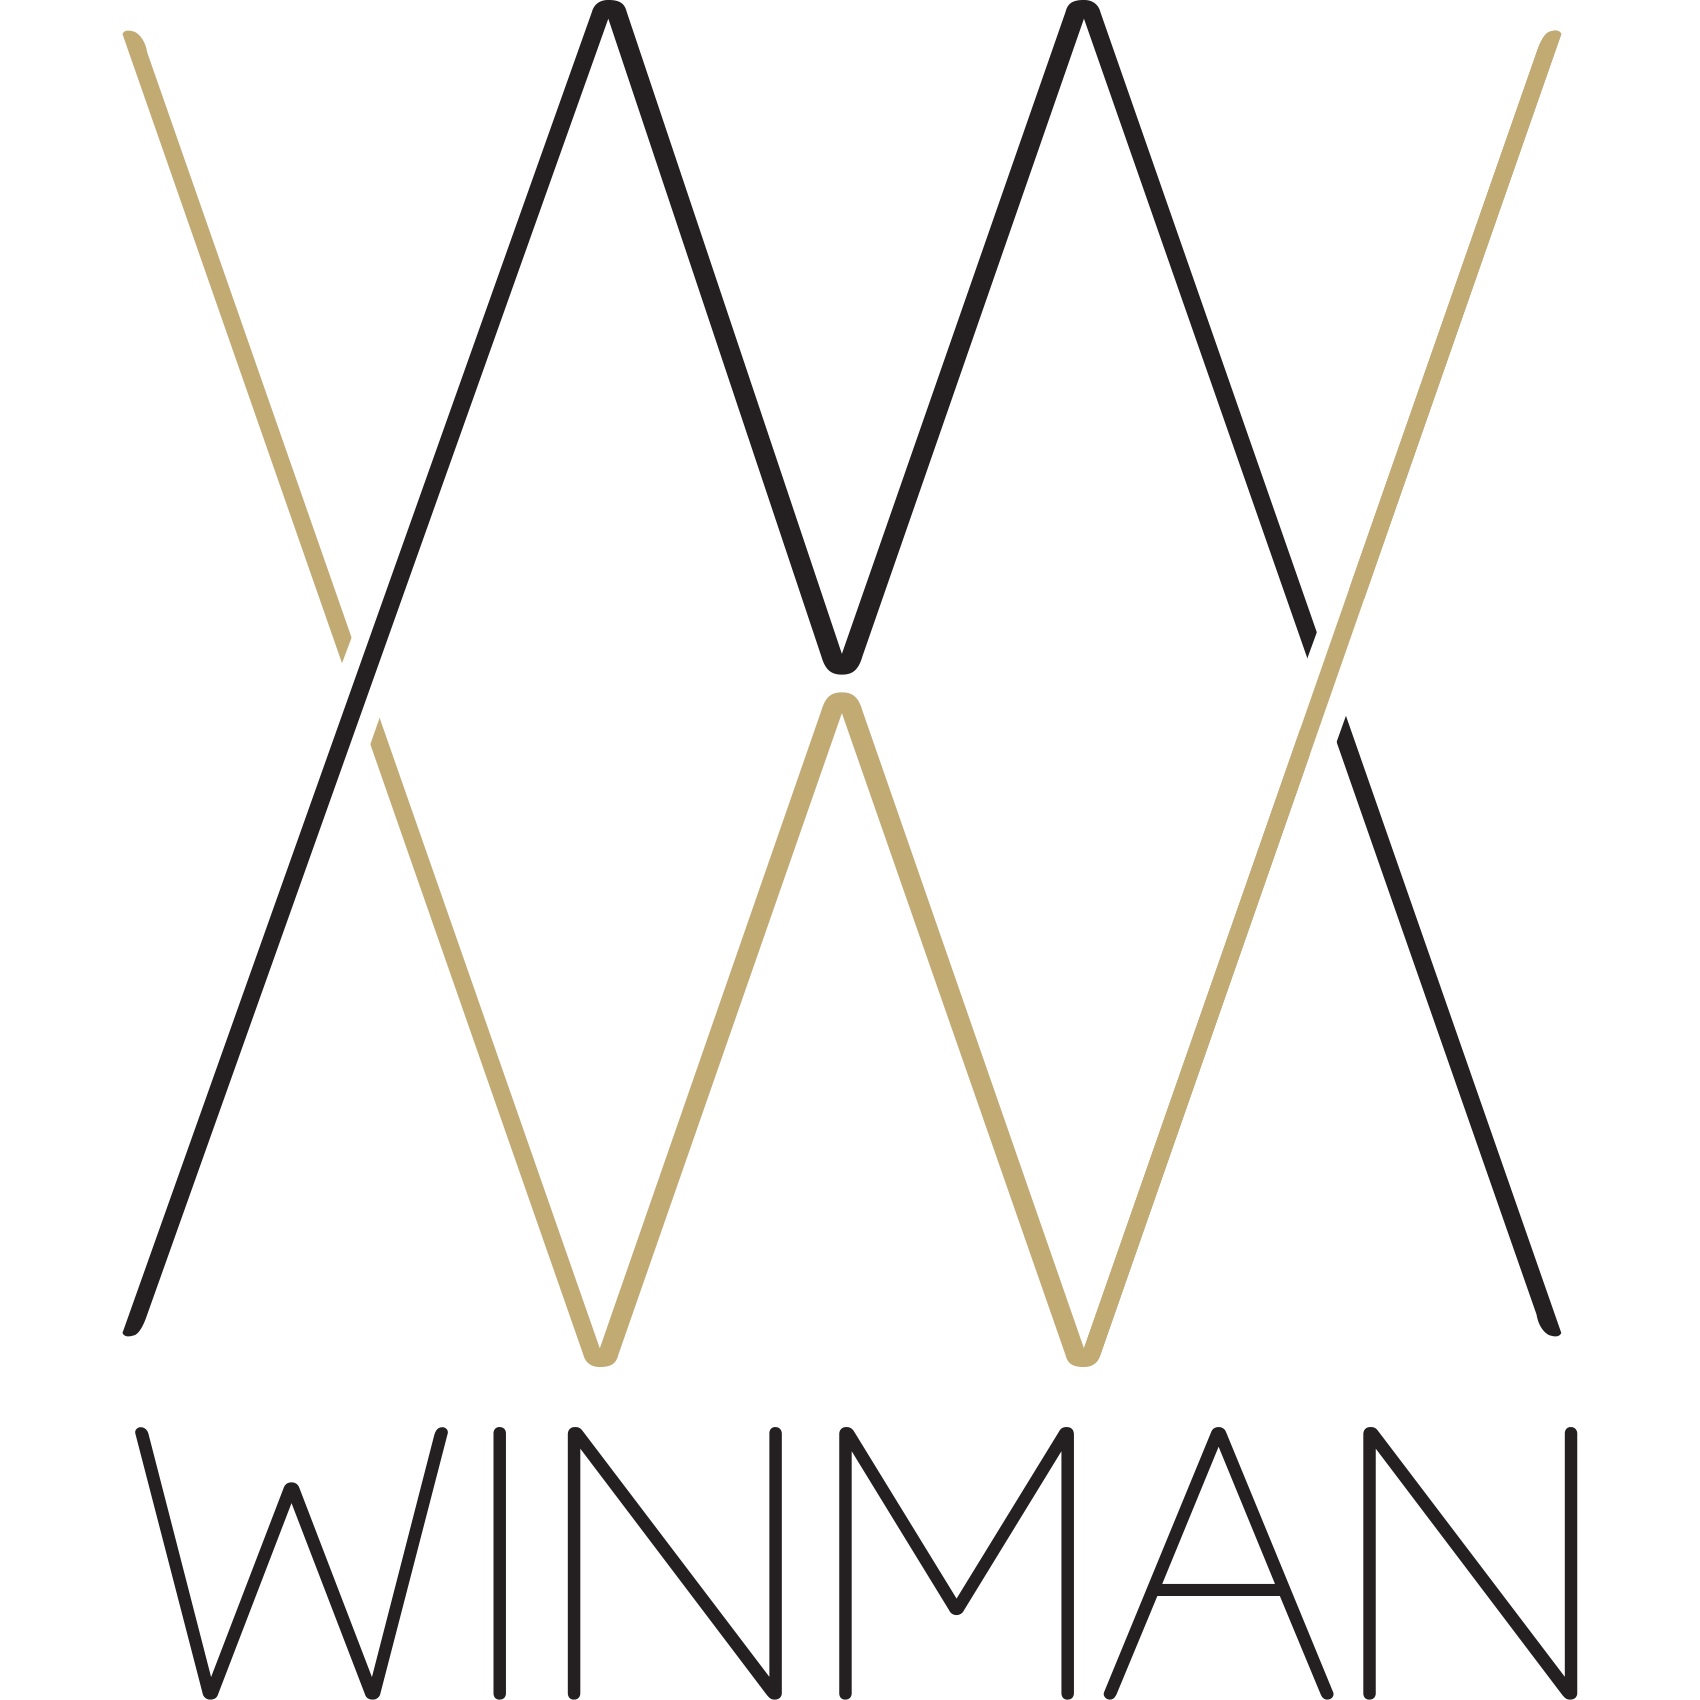 Winman